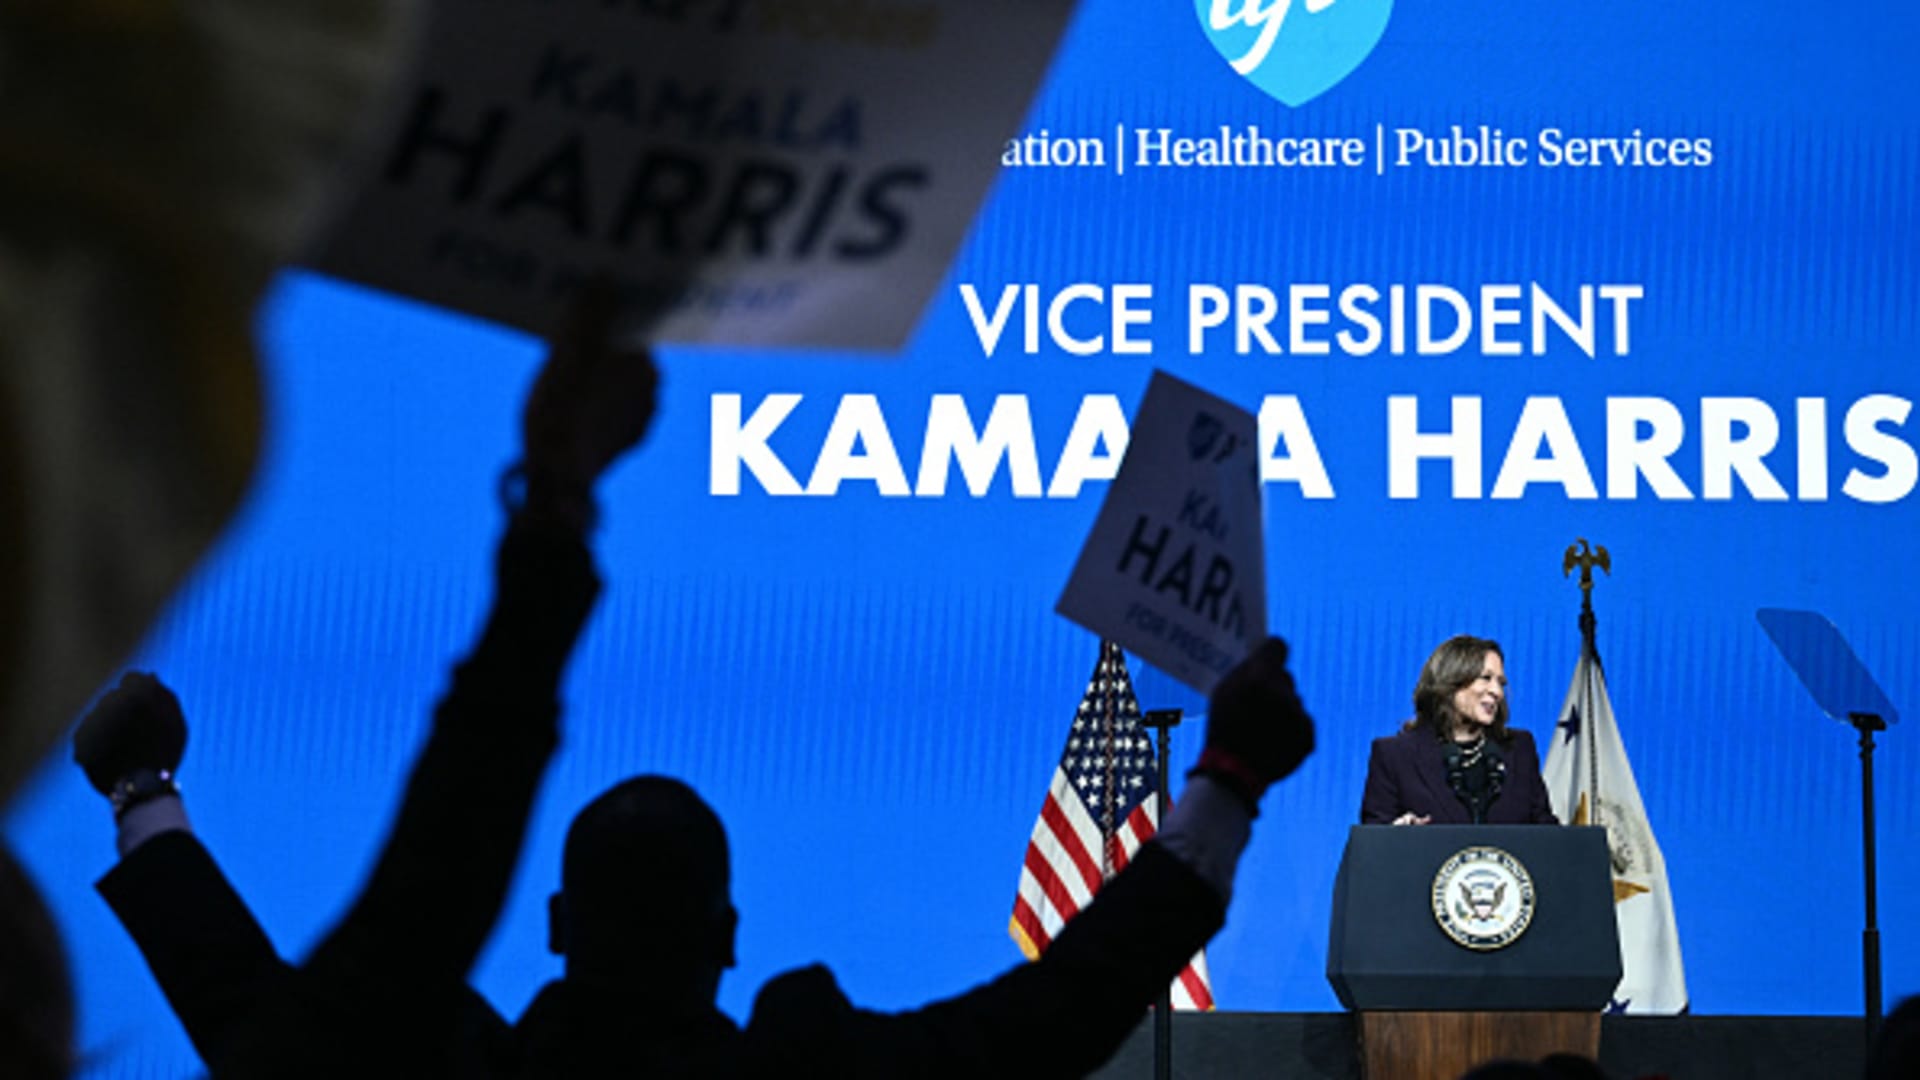 Kamala Harris blasts Trump agenda in teachers union speech [Video]